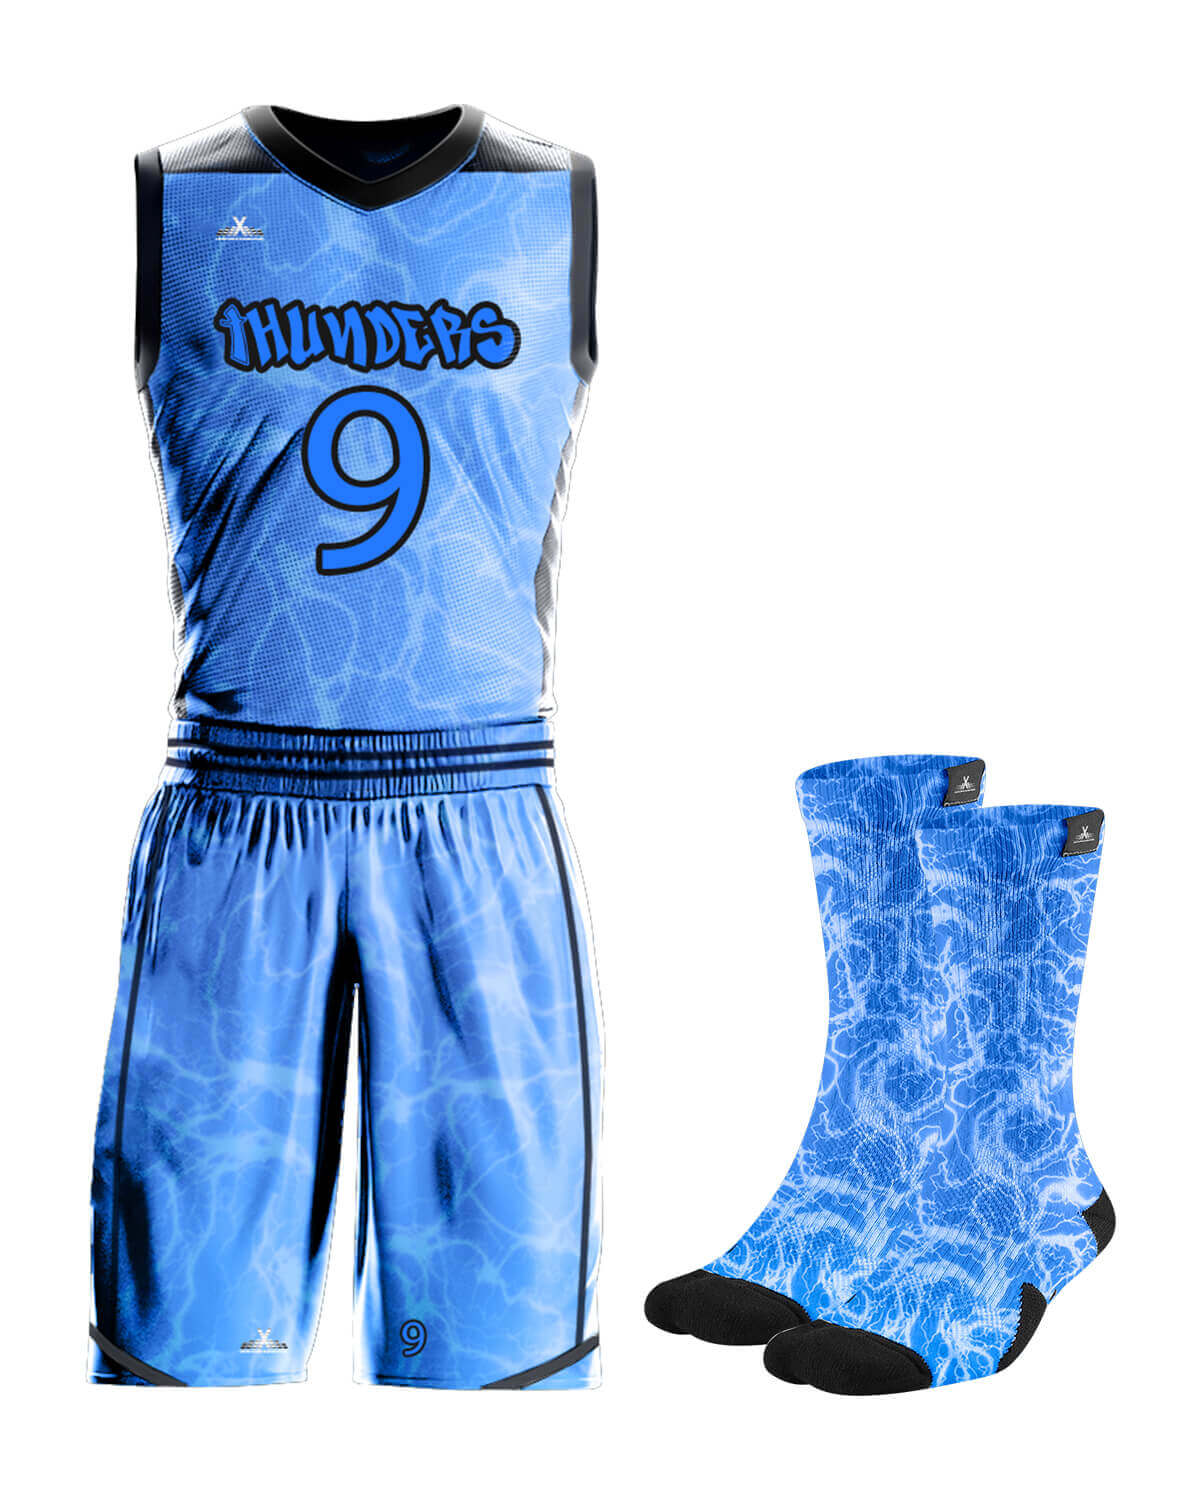 Full Custom Basketball Uniform ( Jersey + Shorts + Socks ) - For Men